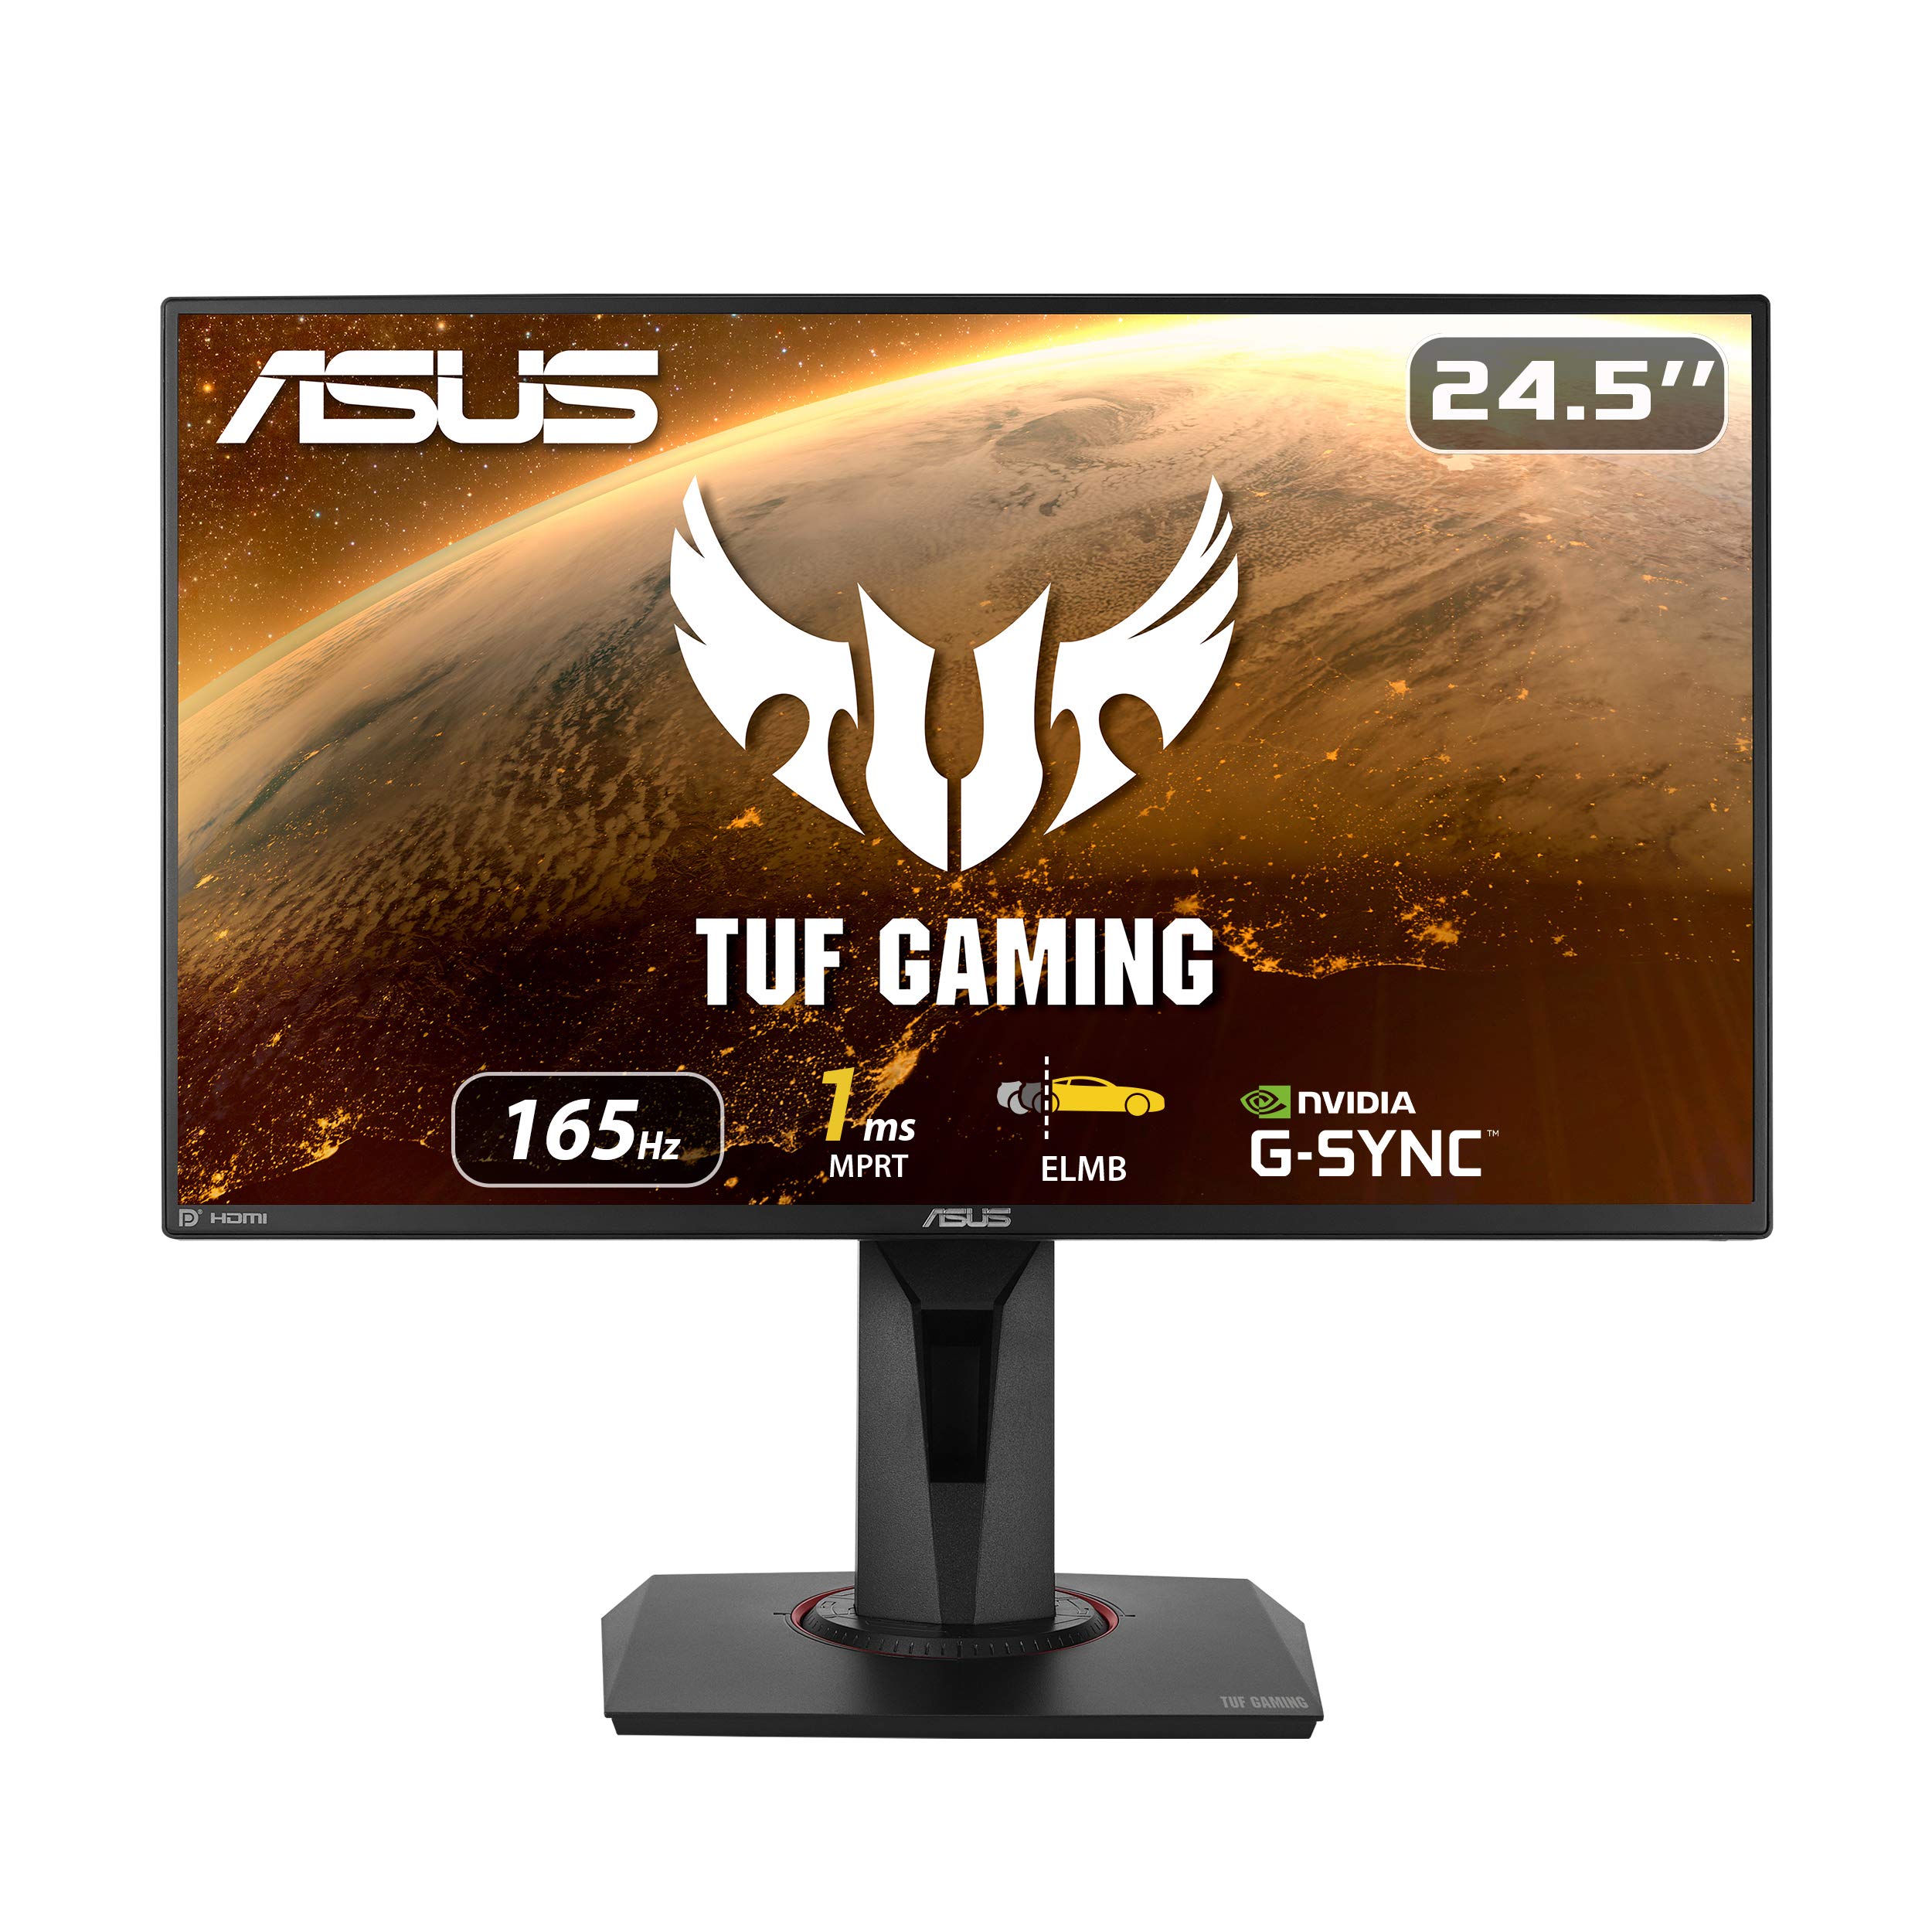 Asus TUF Gaming VG259QR 24.5” Gaming Monitor, 1080P Ful...